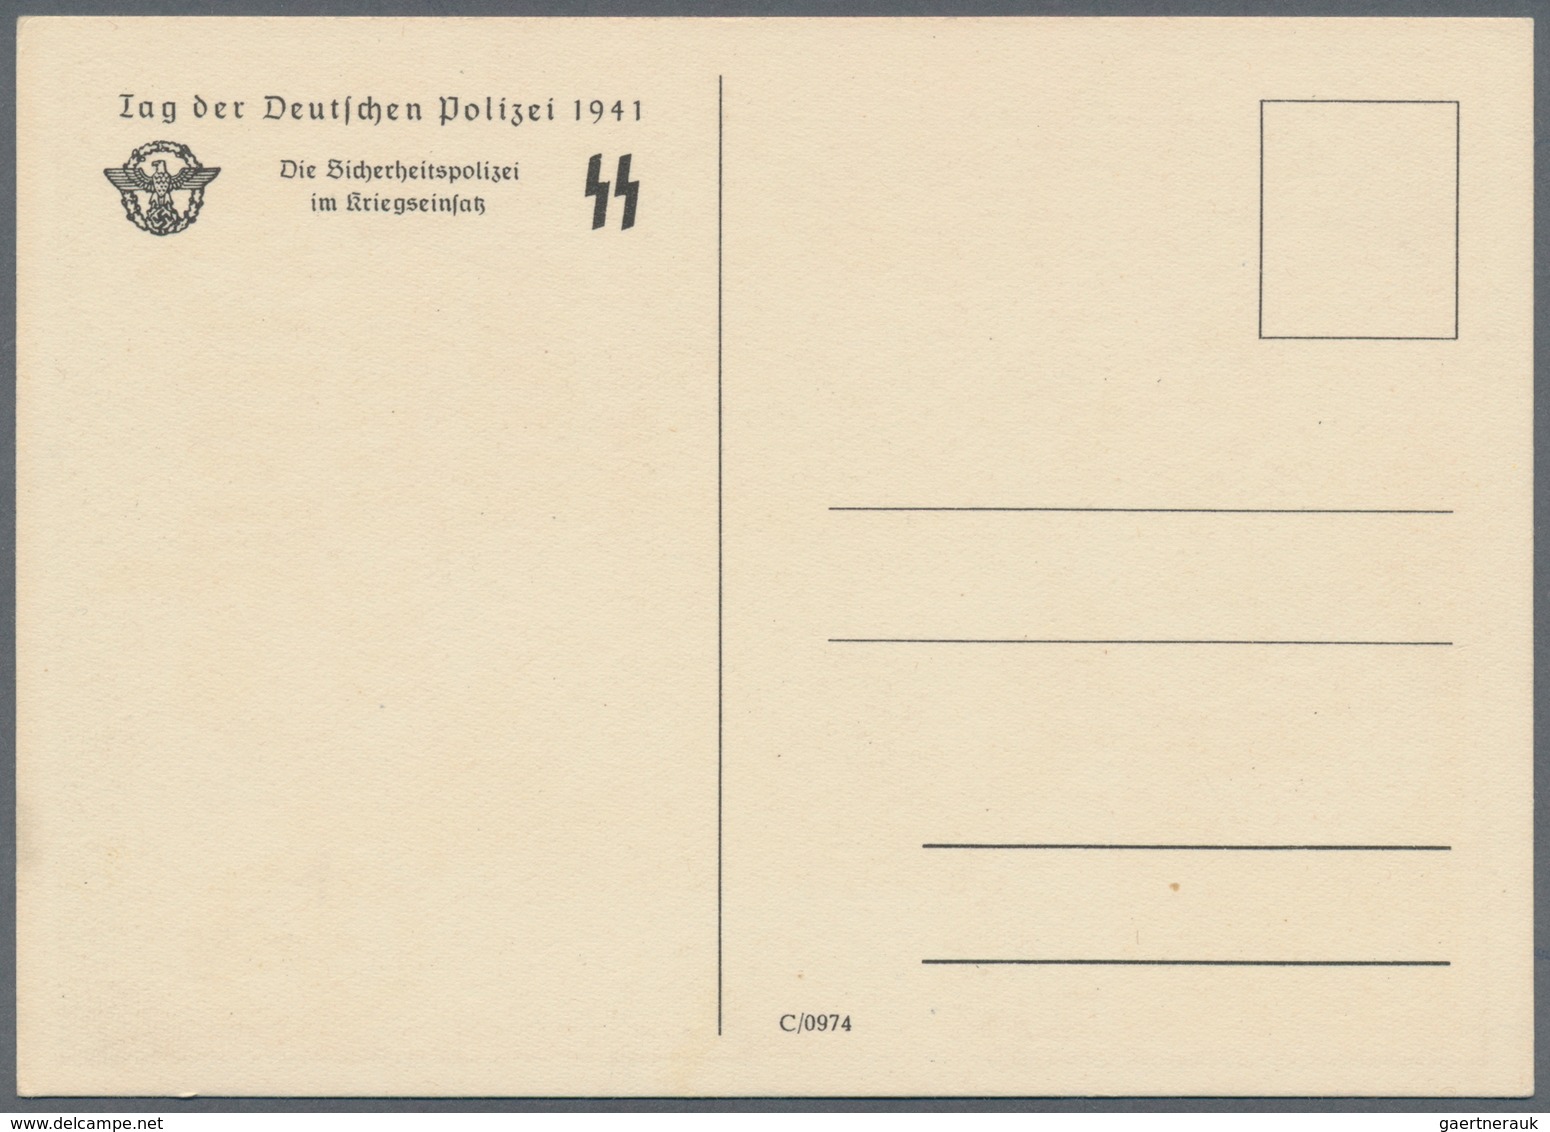 Ansichtskarten: Propaganda: Die Deutsche Polizei / The German Police SS Propaganda Card Set (four Ca - Political Parties & Elections